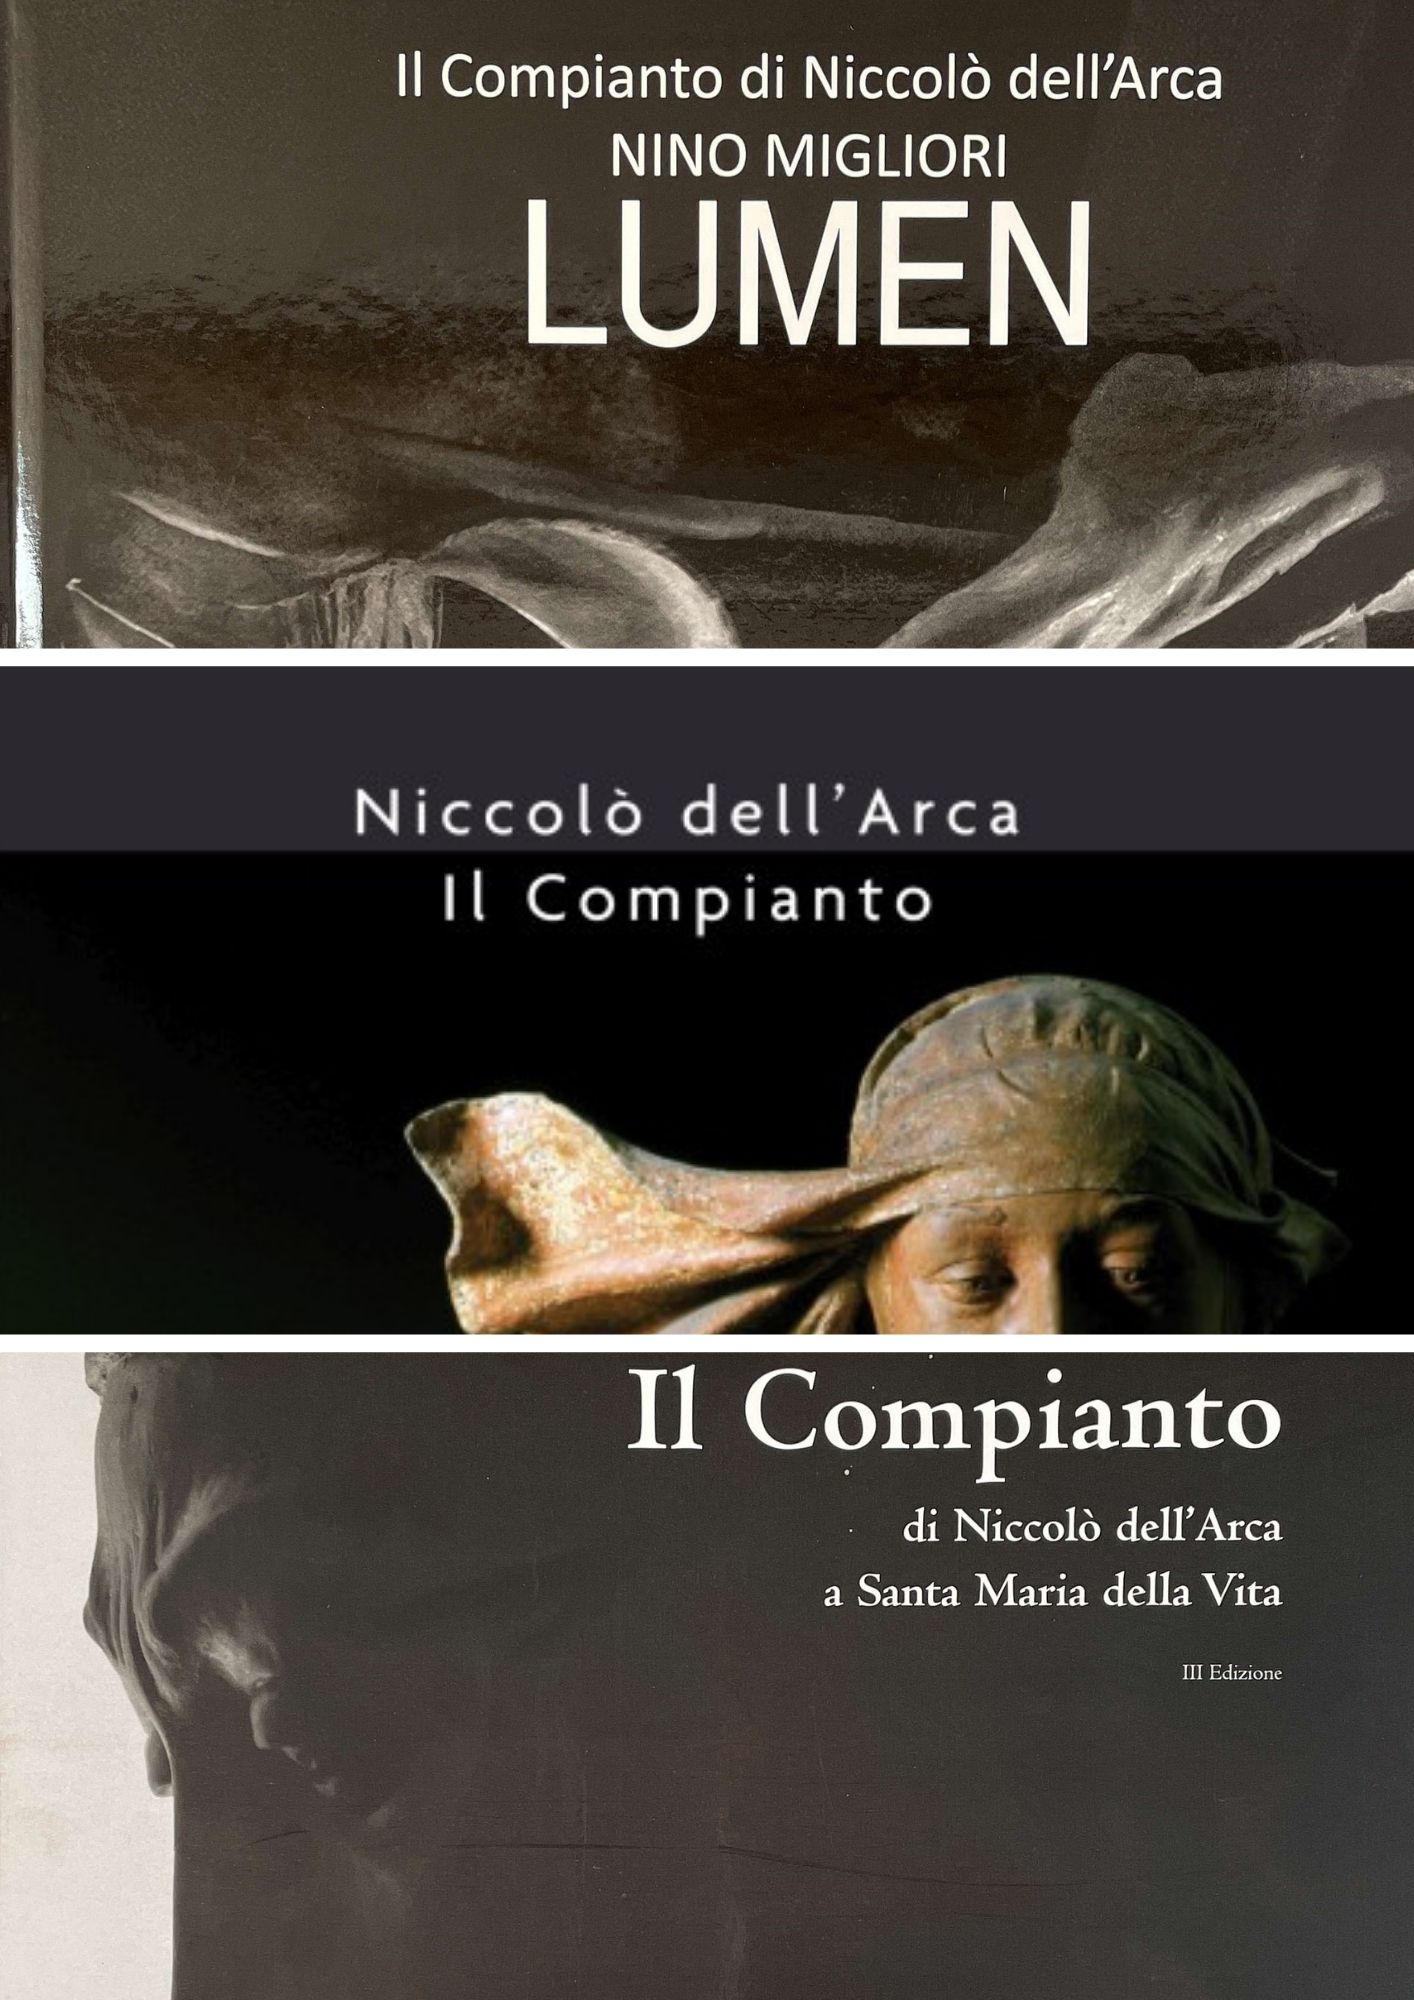 MDC_Pacchetto 4 - Bologna University Press